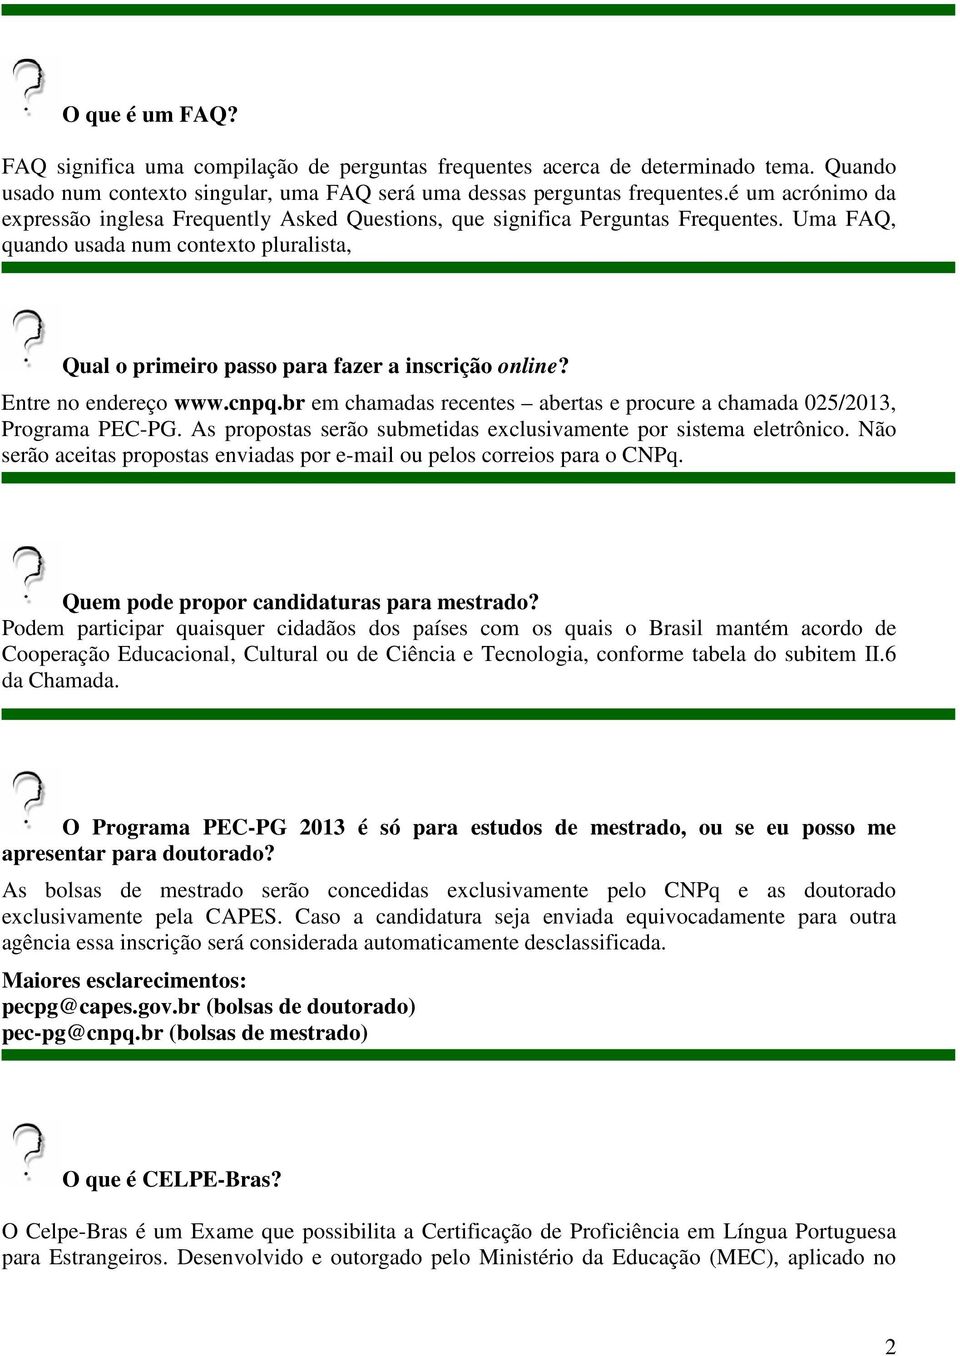 Entre no endereço www.cnpq.br em chamadas recentes abertas e procure a chamada 025/2013, Programa PEC-PG. As propostas serão submetidas exclusivamente por sistema eletrônico.